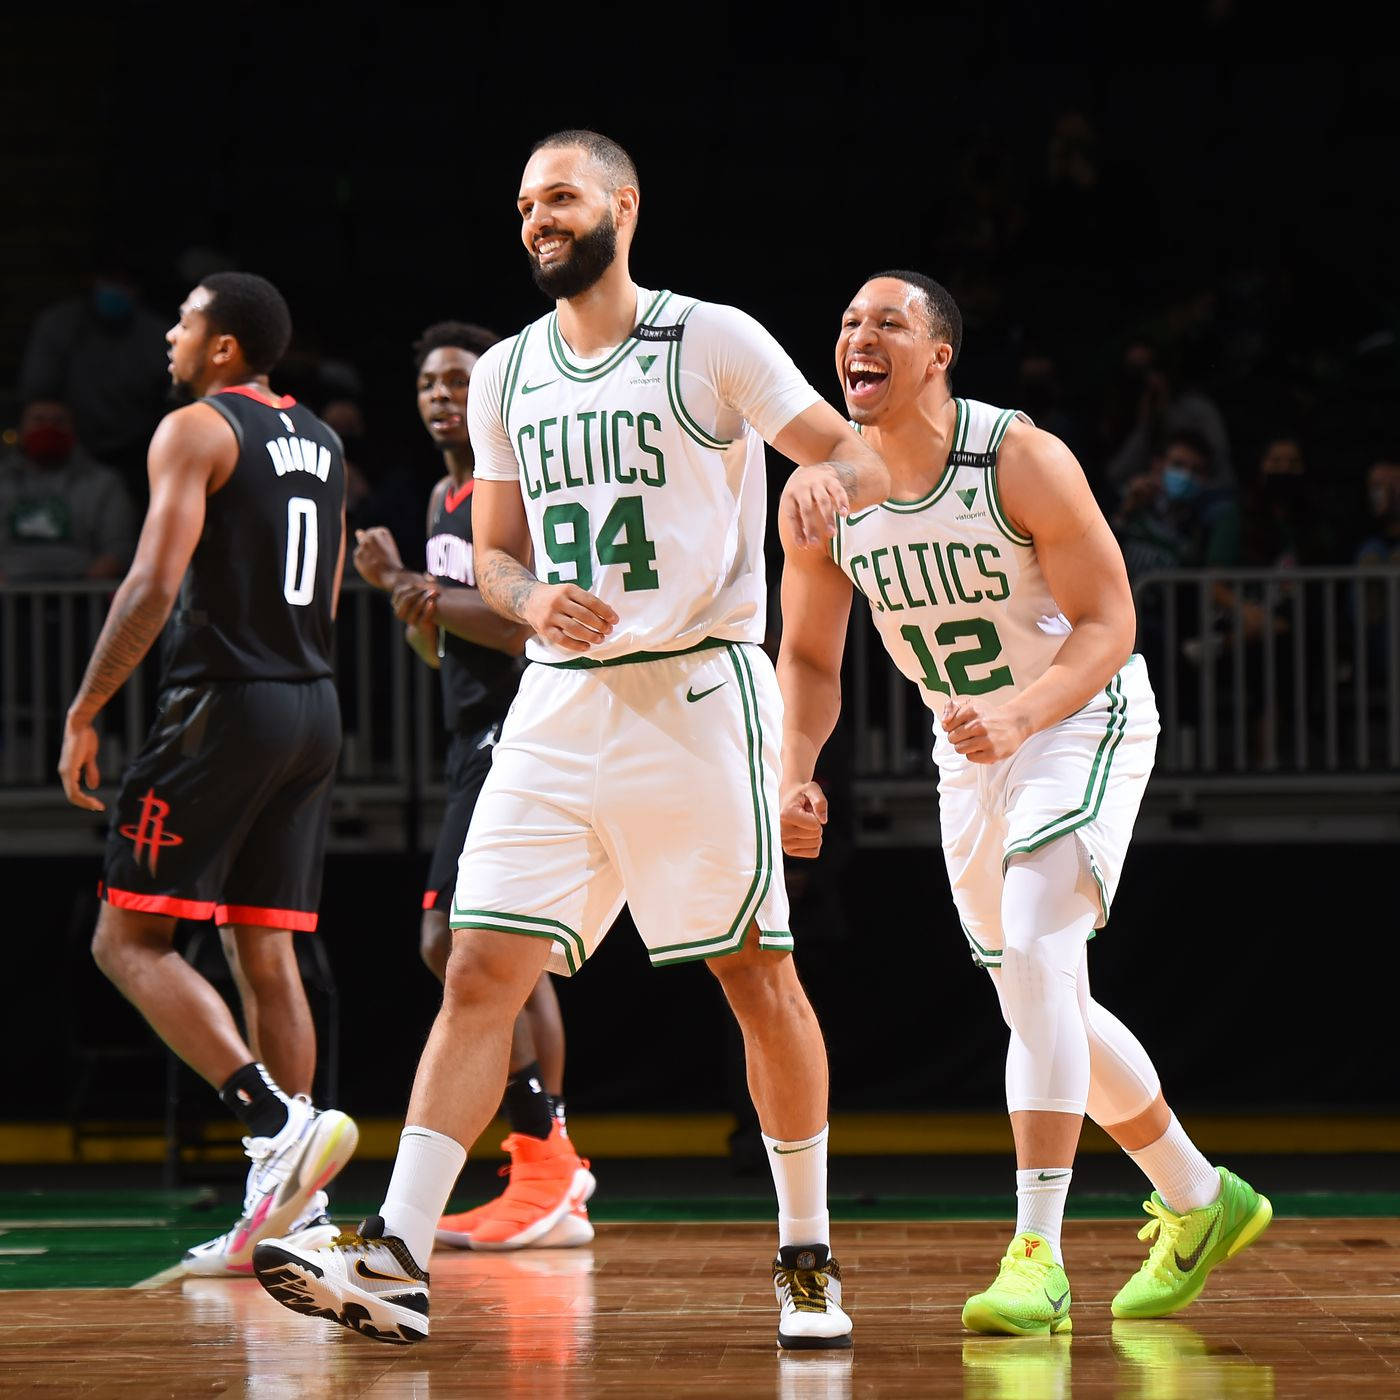 Evanfournier Und Grant Williams Celtics Gegen Rockets Wallpaper